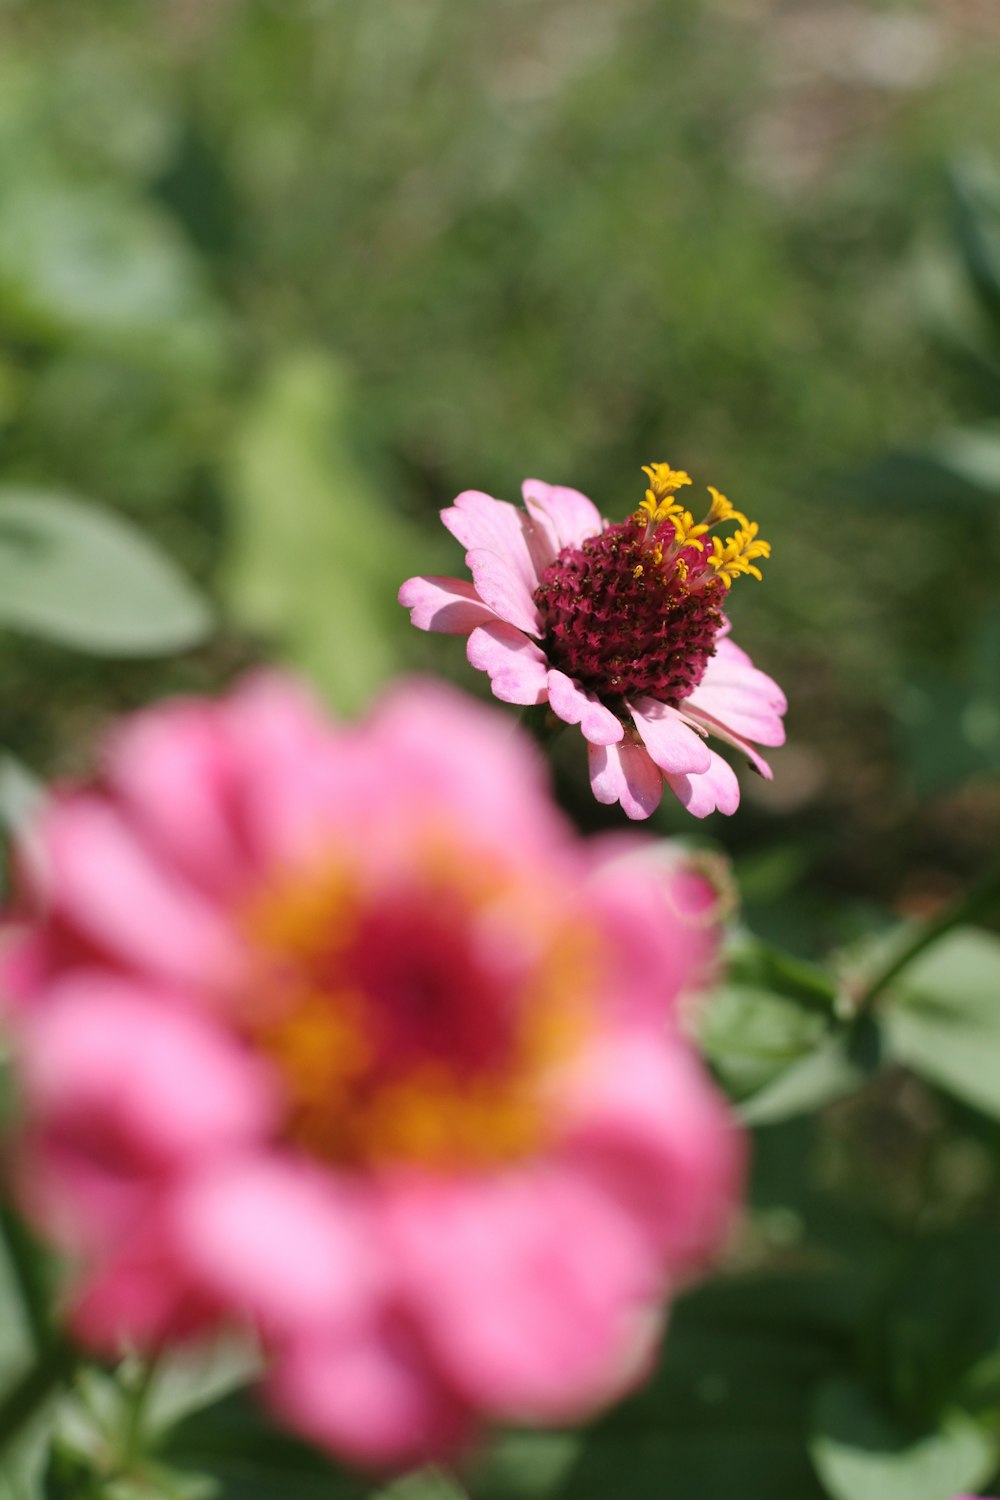 fleur rose et jaune dans une lentille à bascule